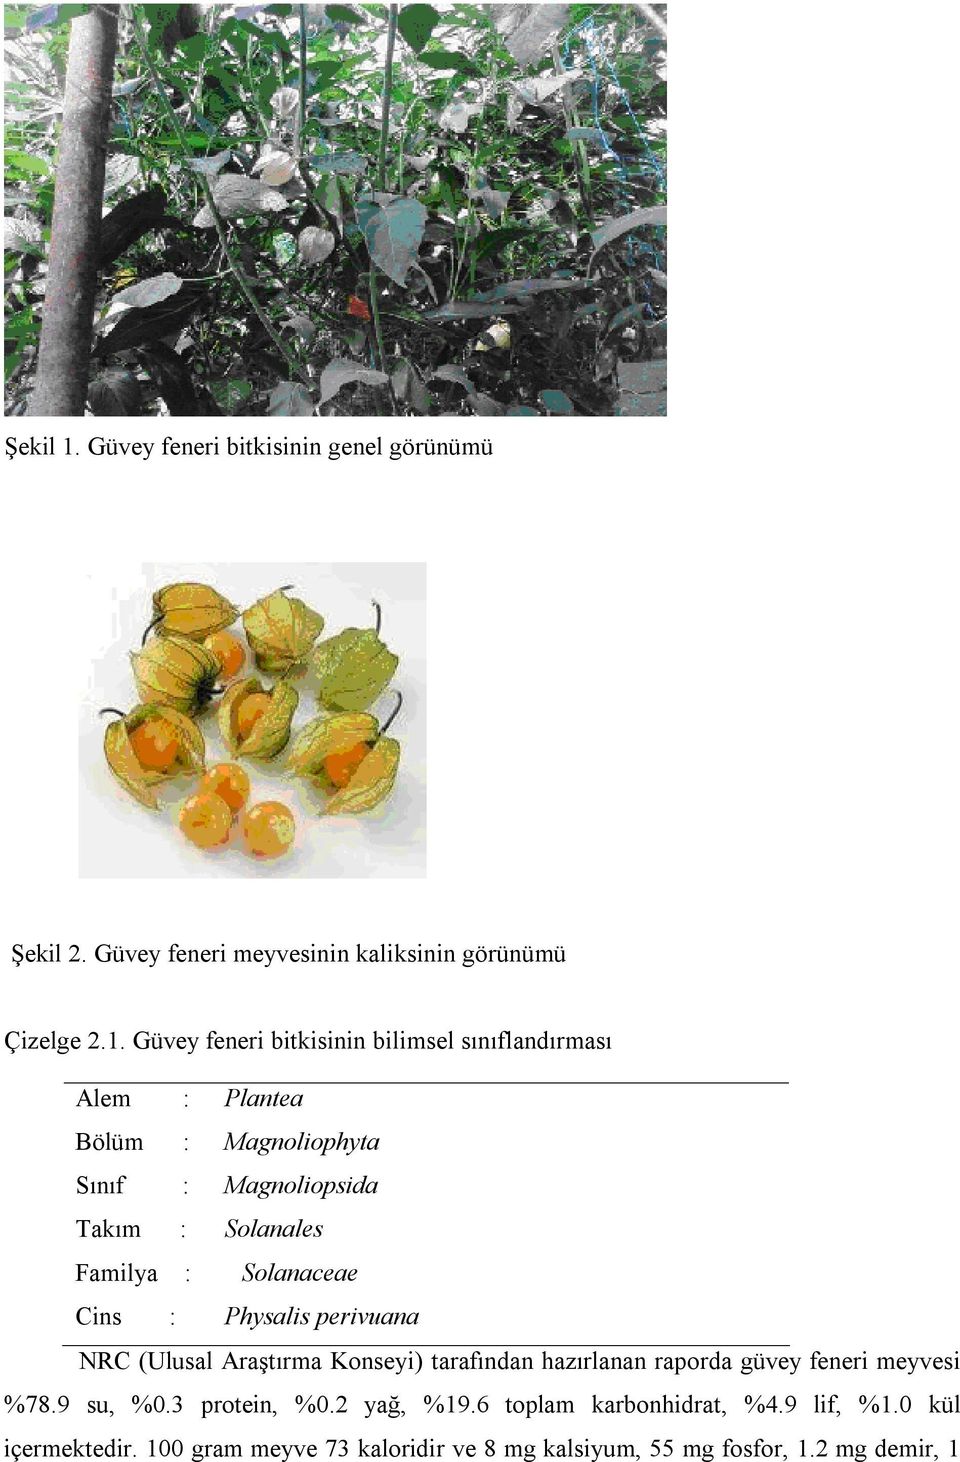 Güvey feneri bitkisinin bilimsel sınıflandırması Alem : Plantea Bölüm : Magnoliophyta Sınıf : Magnoliopsida Takım : Solanales Familya